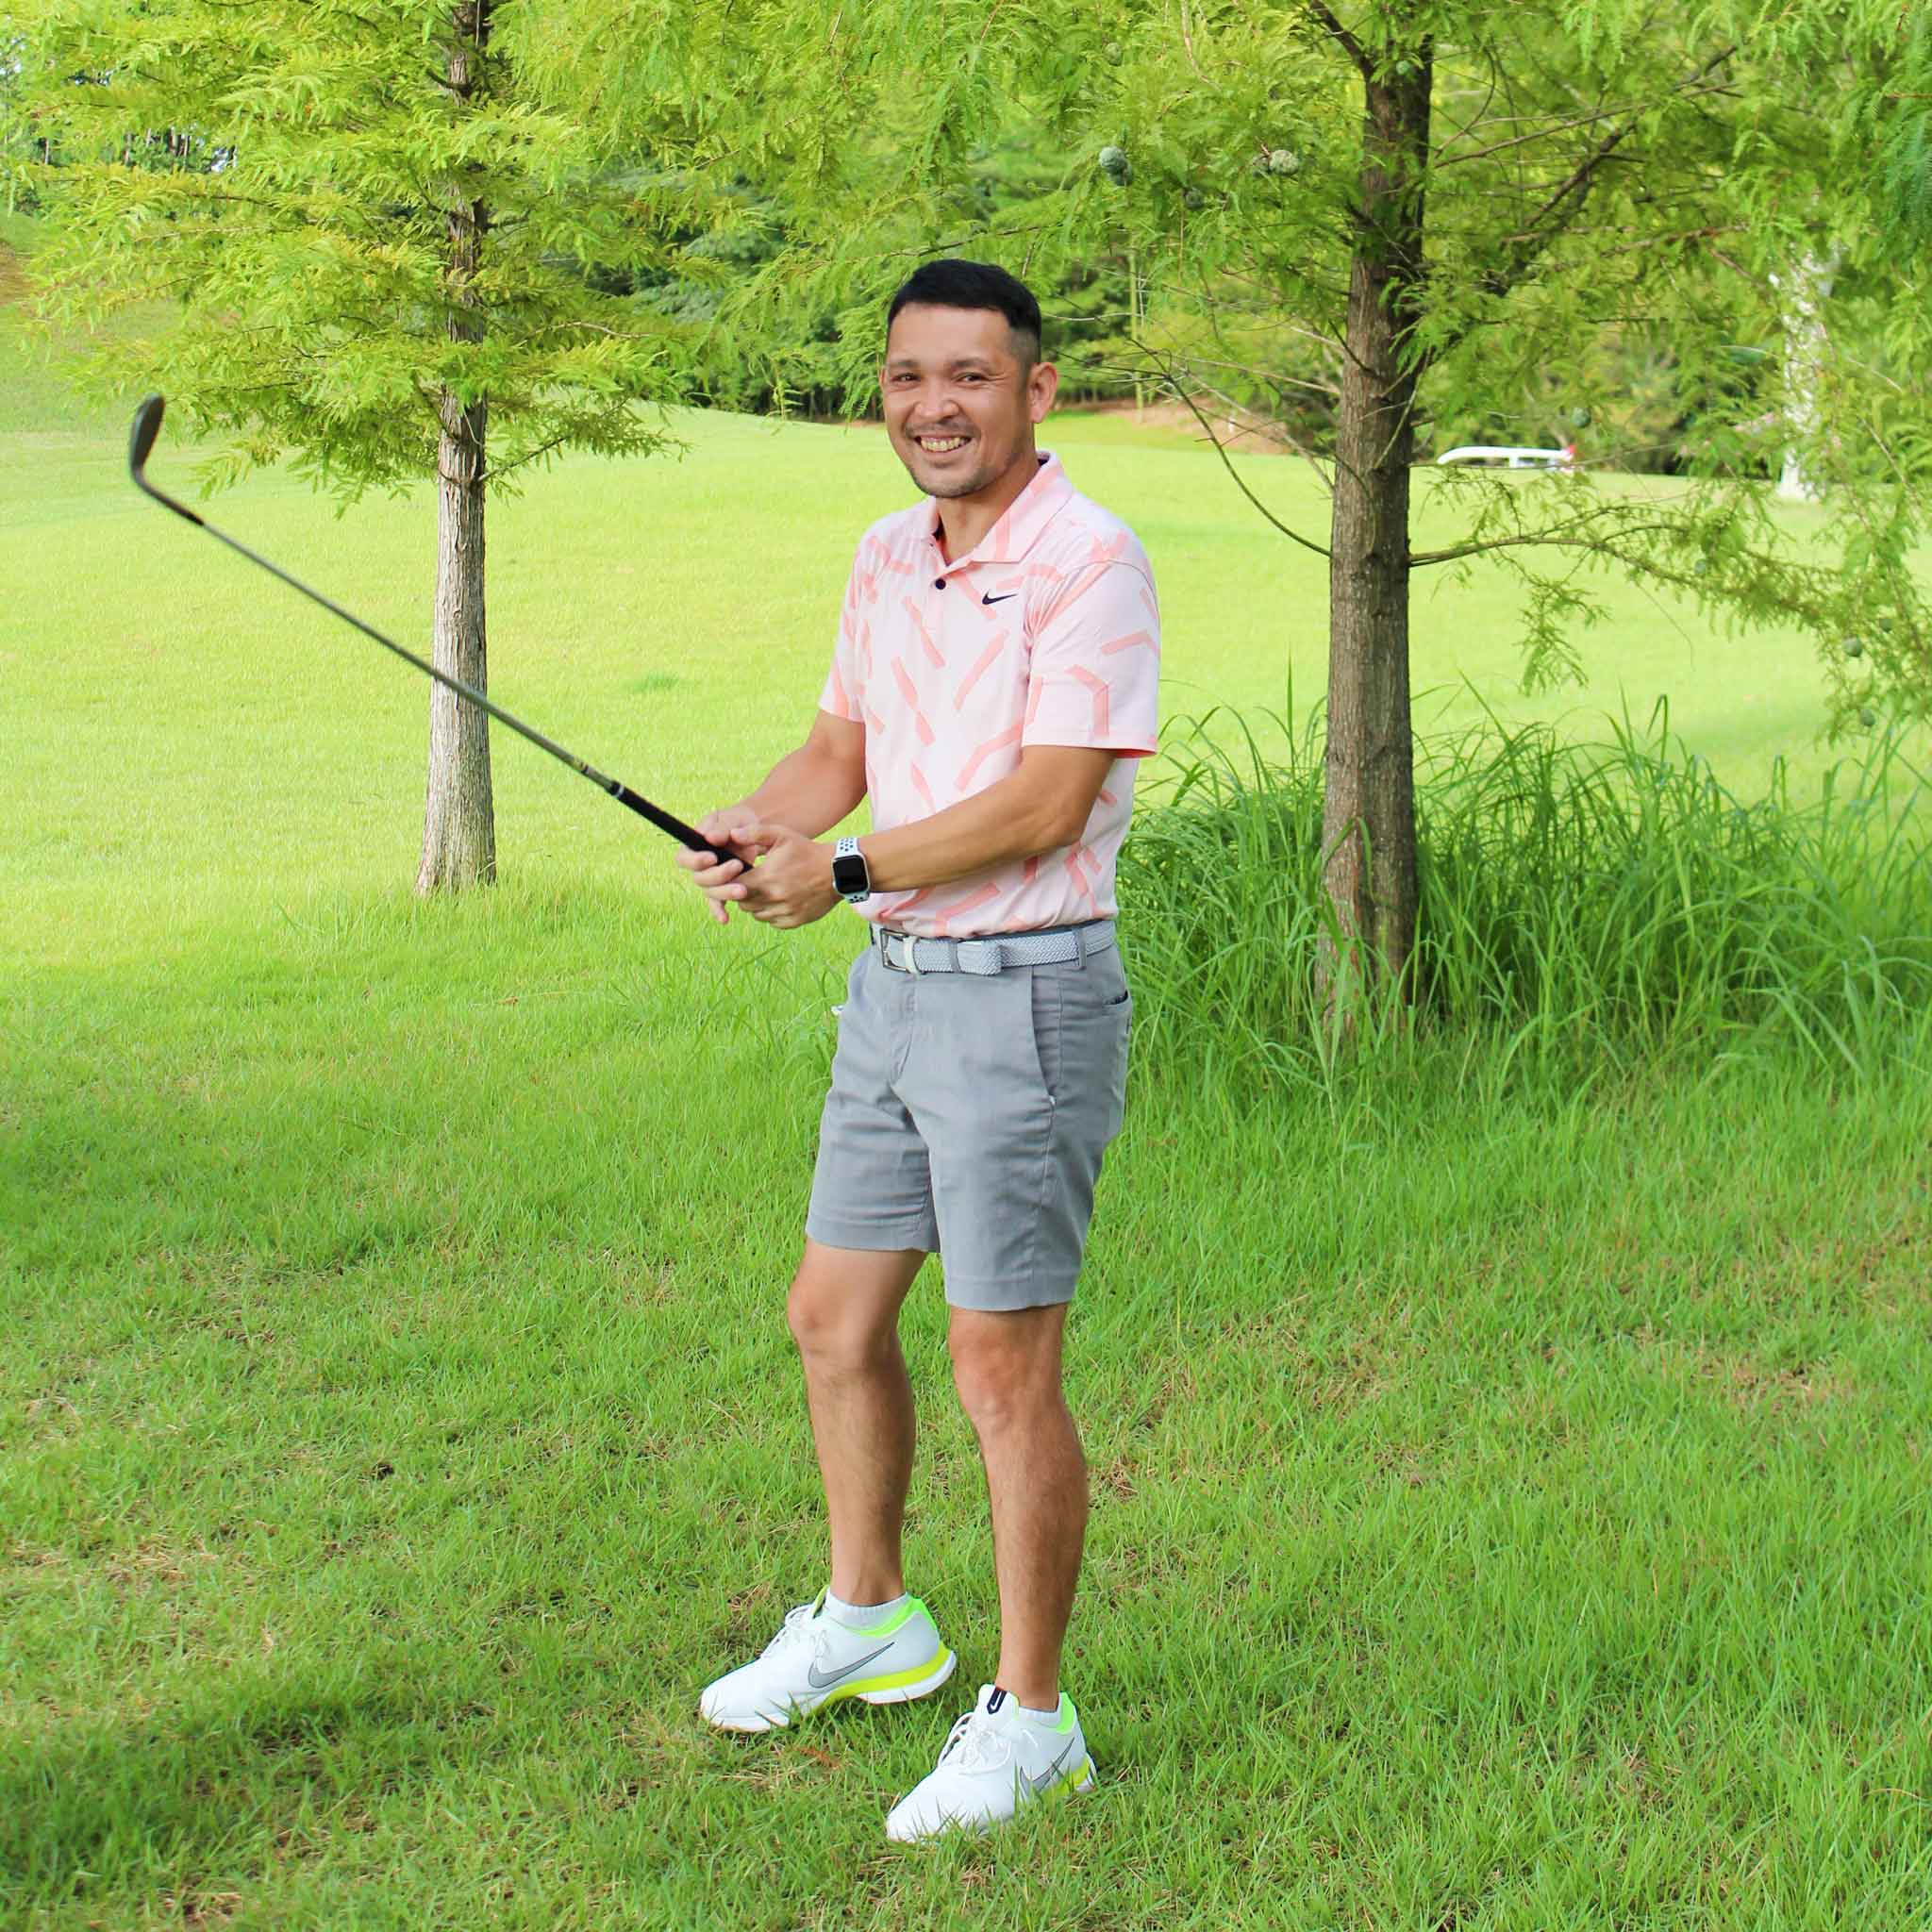 関西ゴルフサークル セブンエイトのガチンコCUP西尾さん2位の記念写真